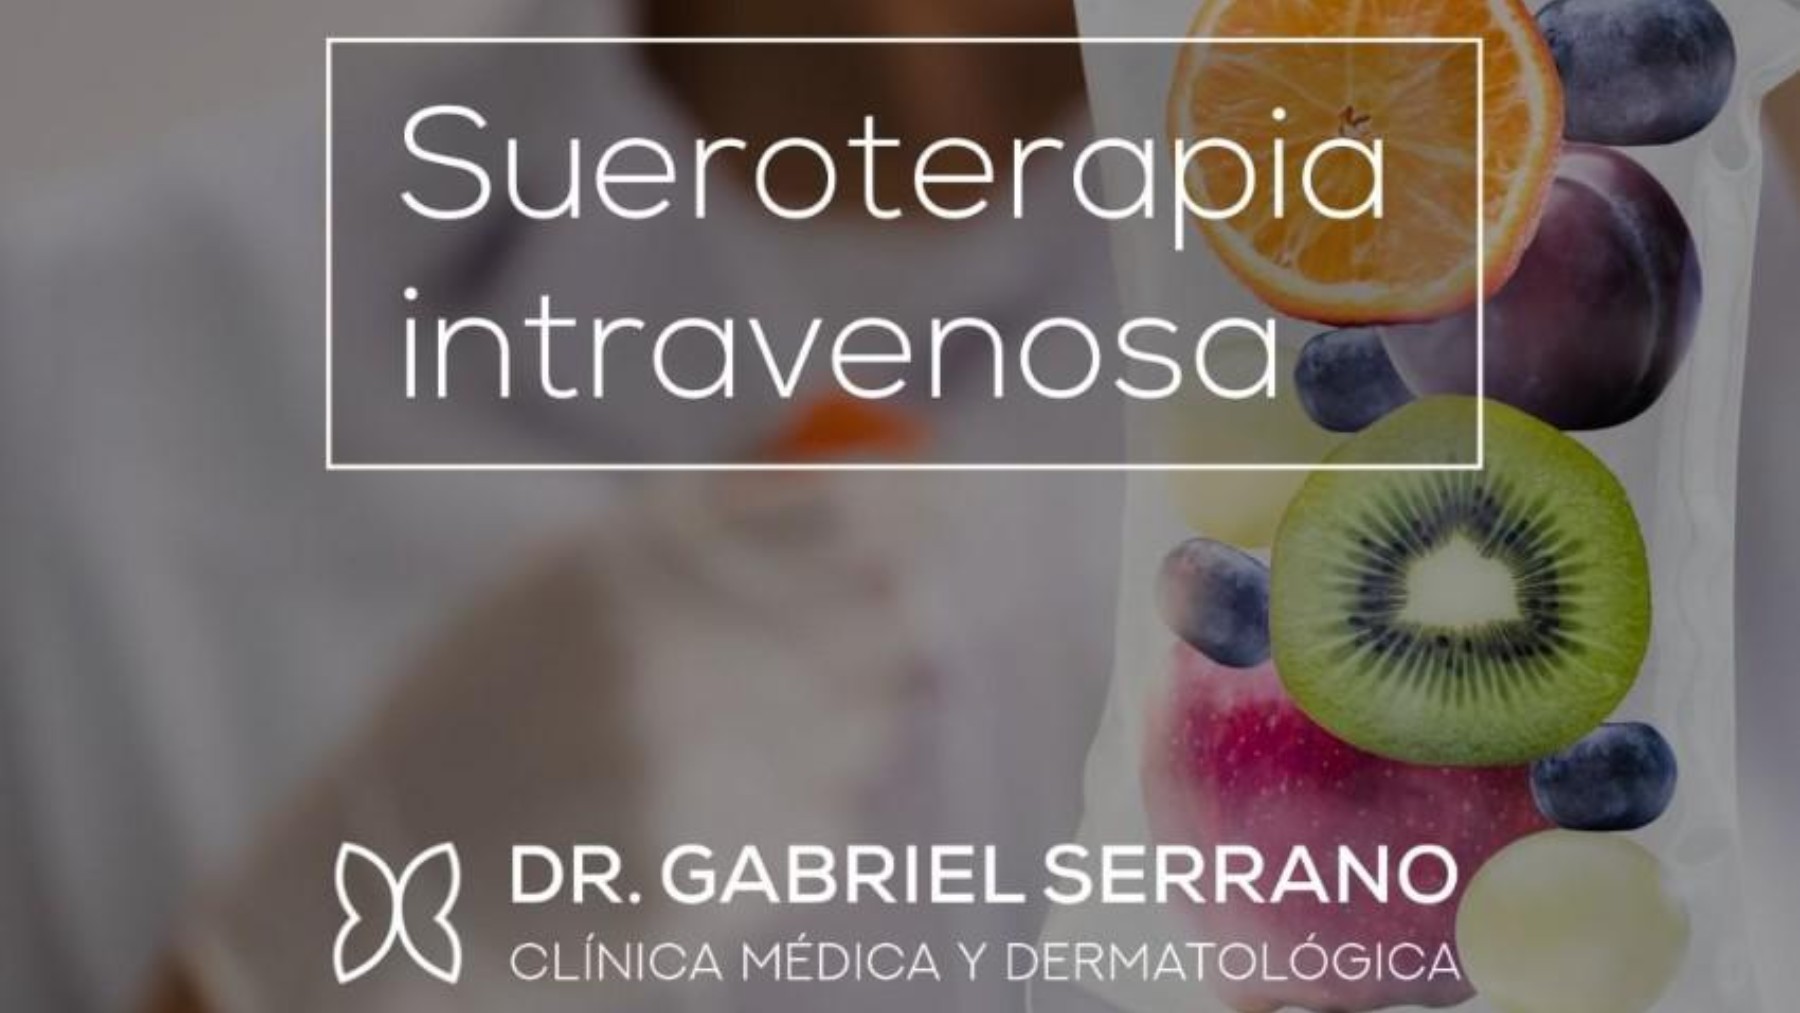 Sueroterapia o ‘vitamina-drip’: llega a Valencia la belleza intravenosa.